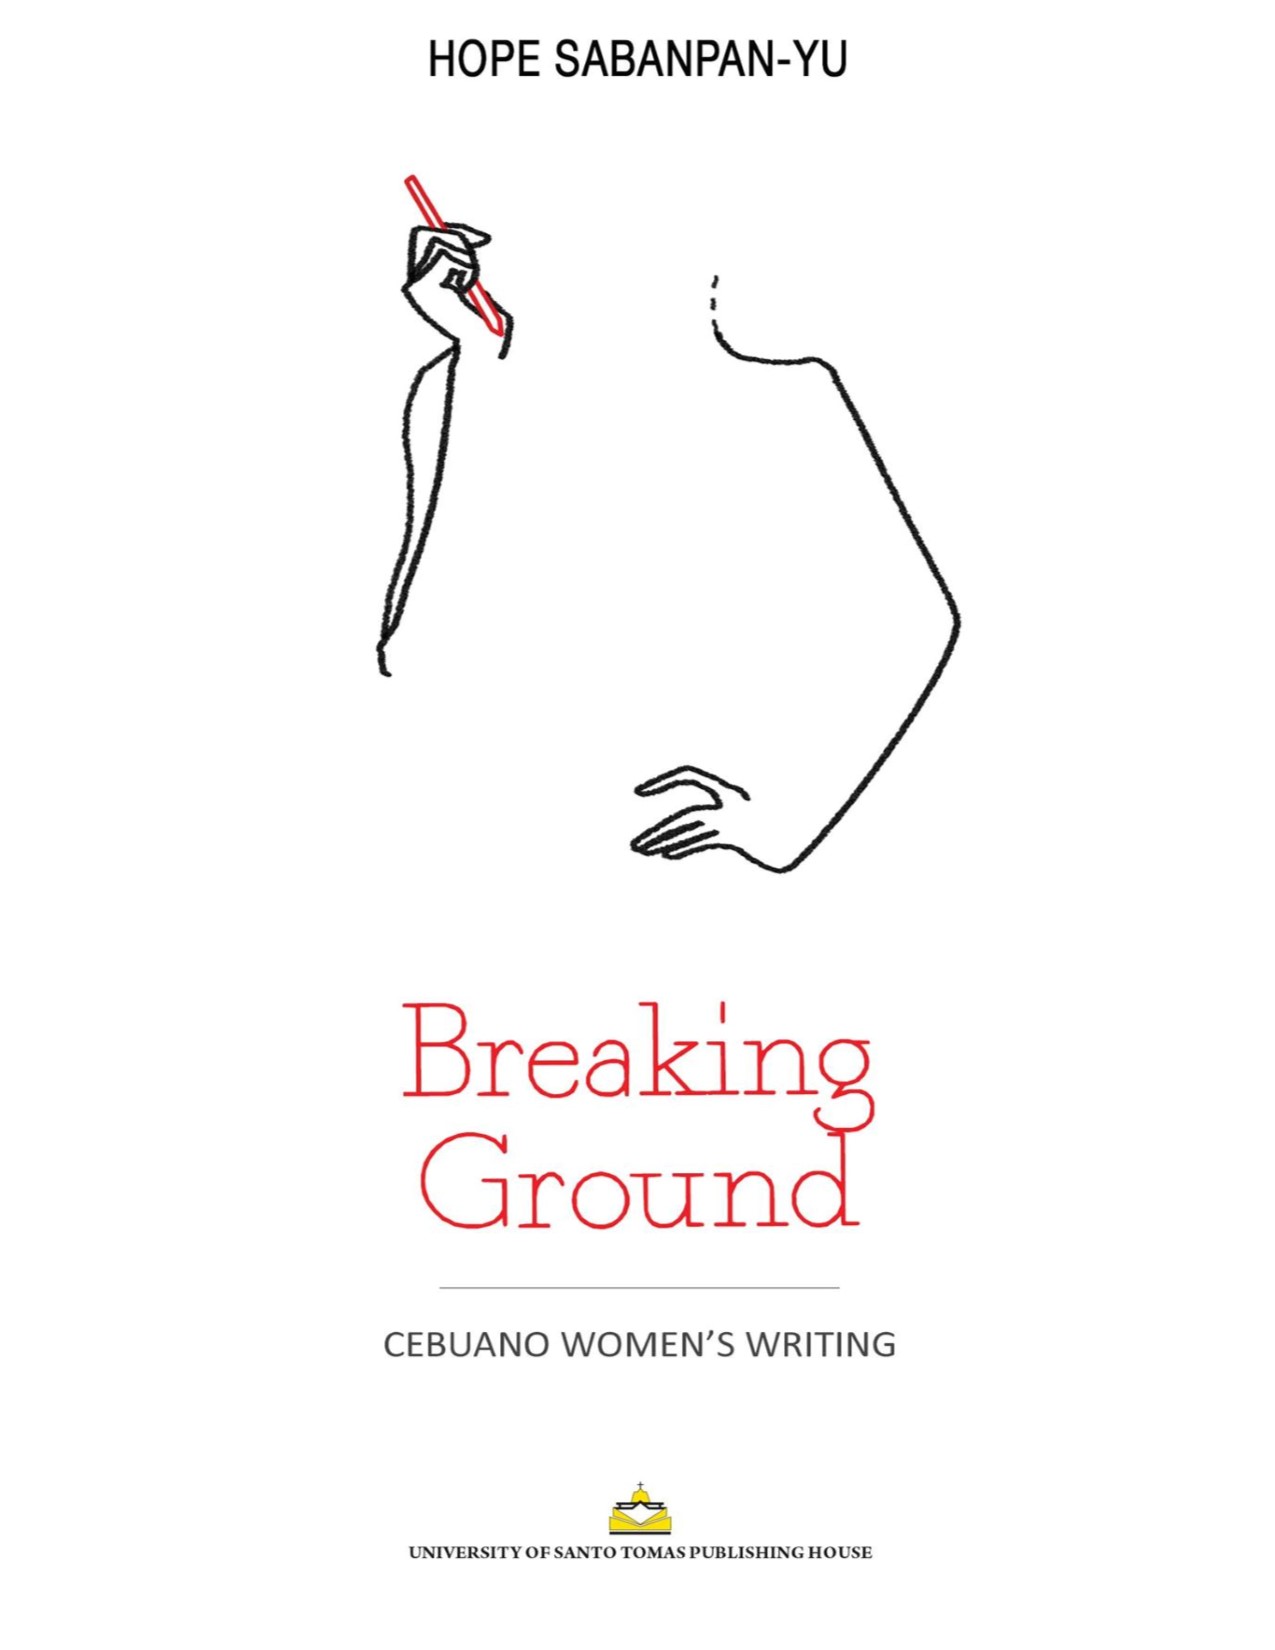 Breaking ground Cebuano women's writing